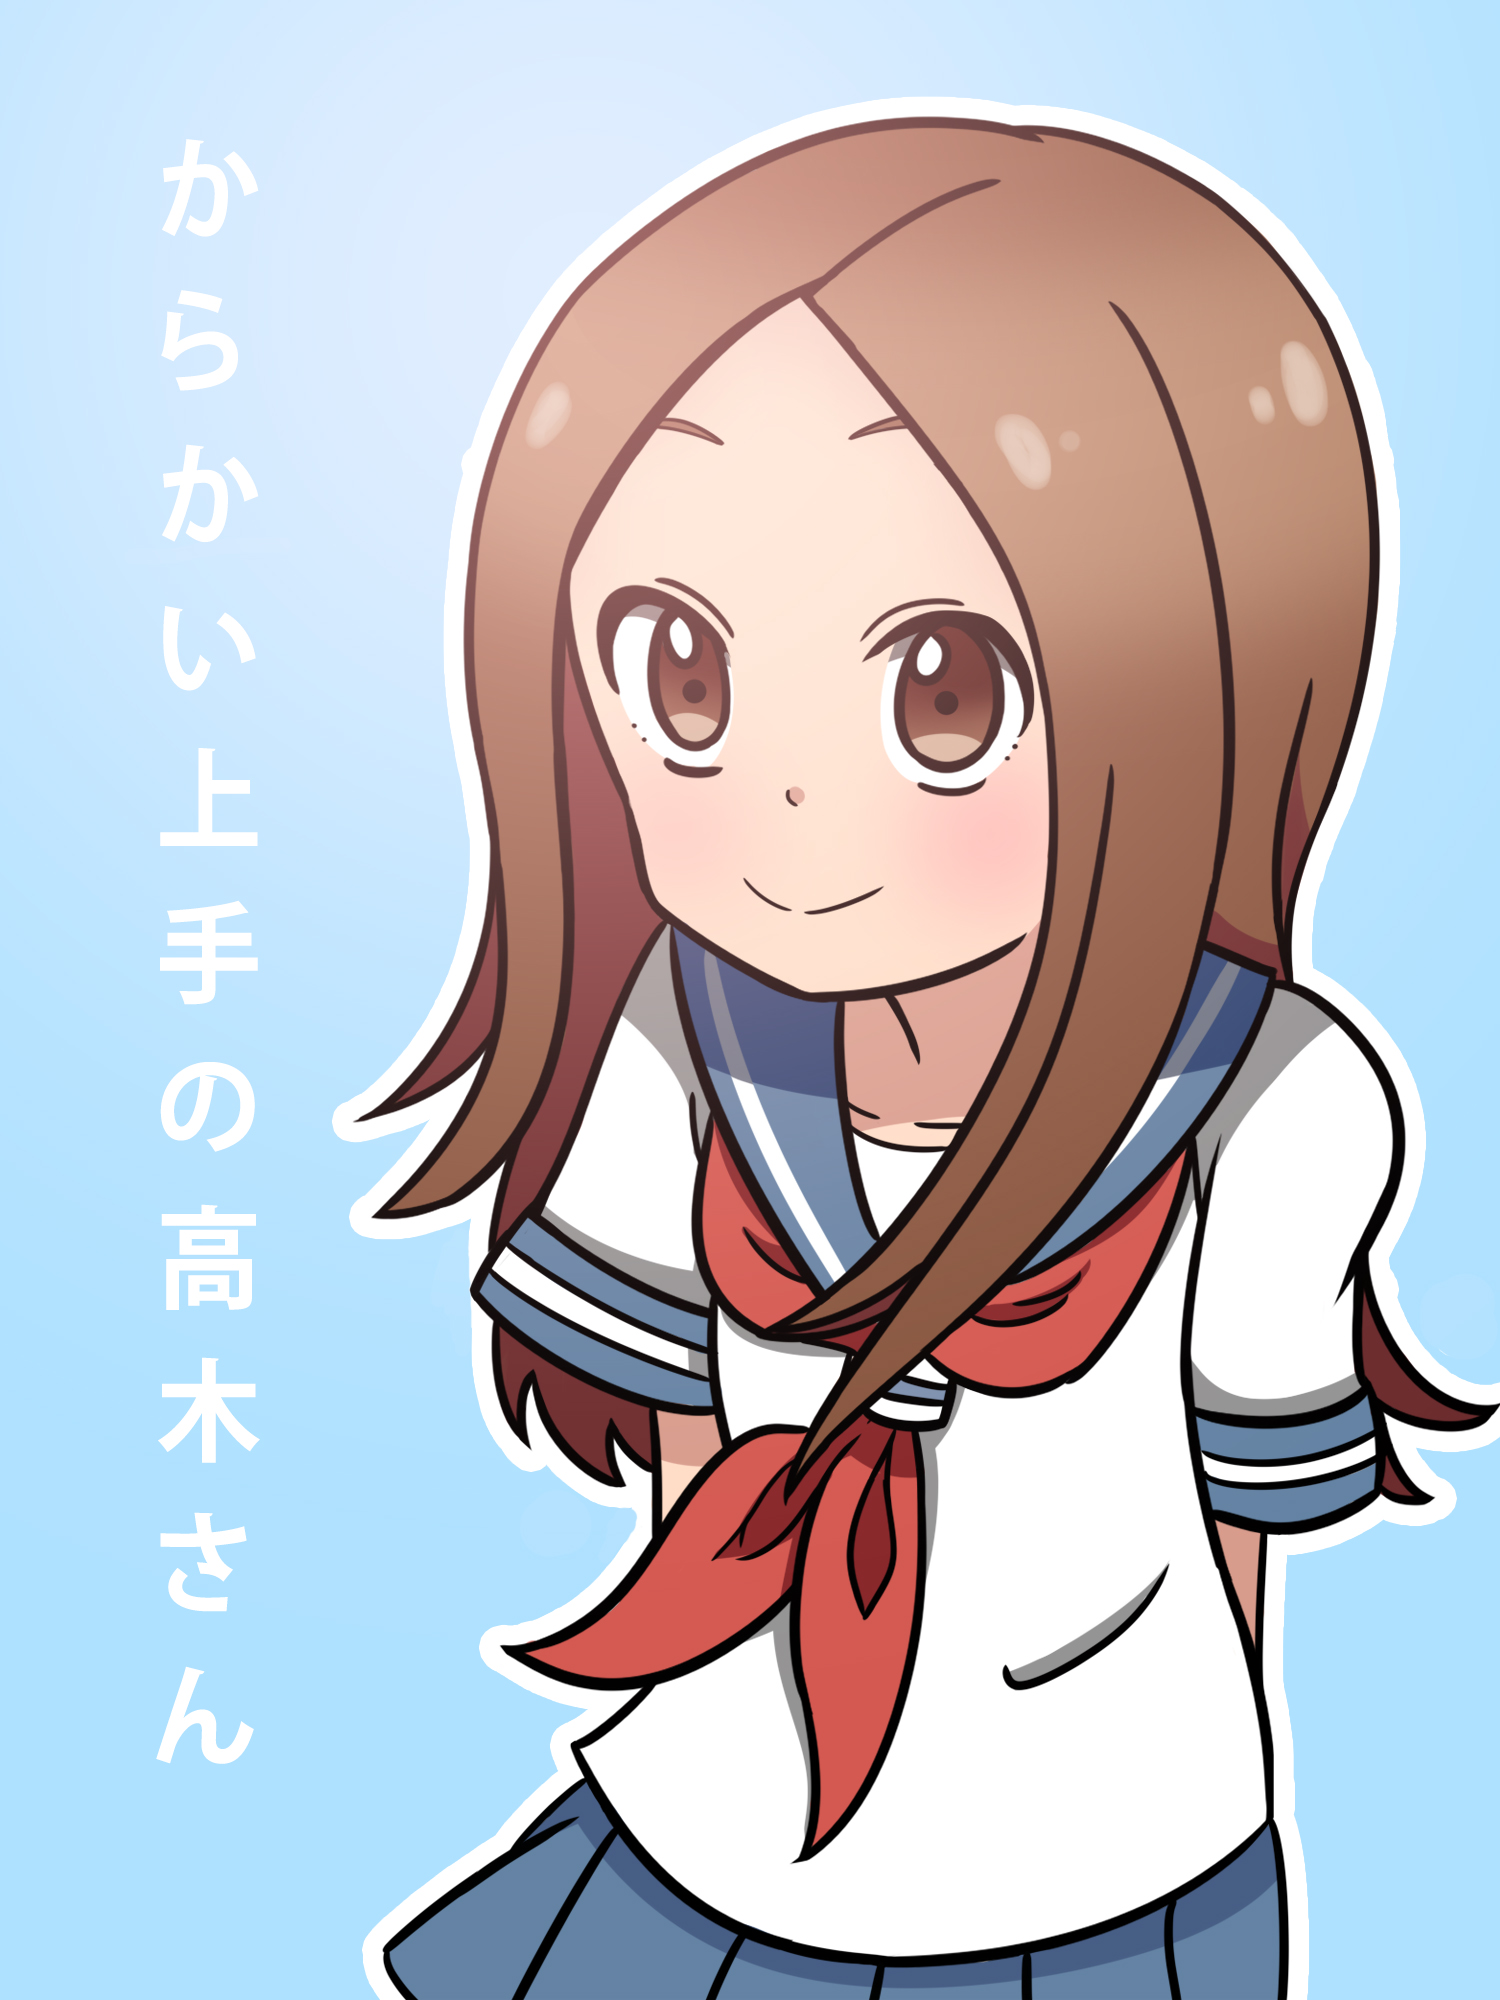 Karakai Jouzu no Takagi-san 3 Anime Icon by milanroberto9 on DeviantArt